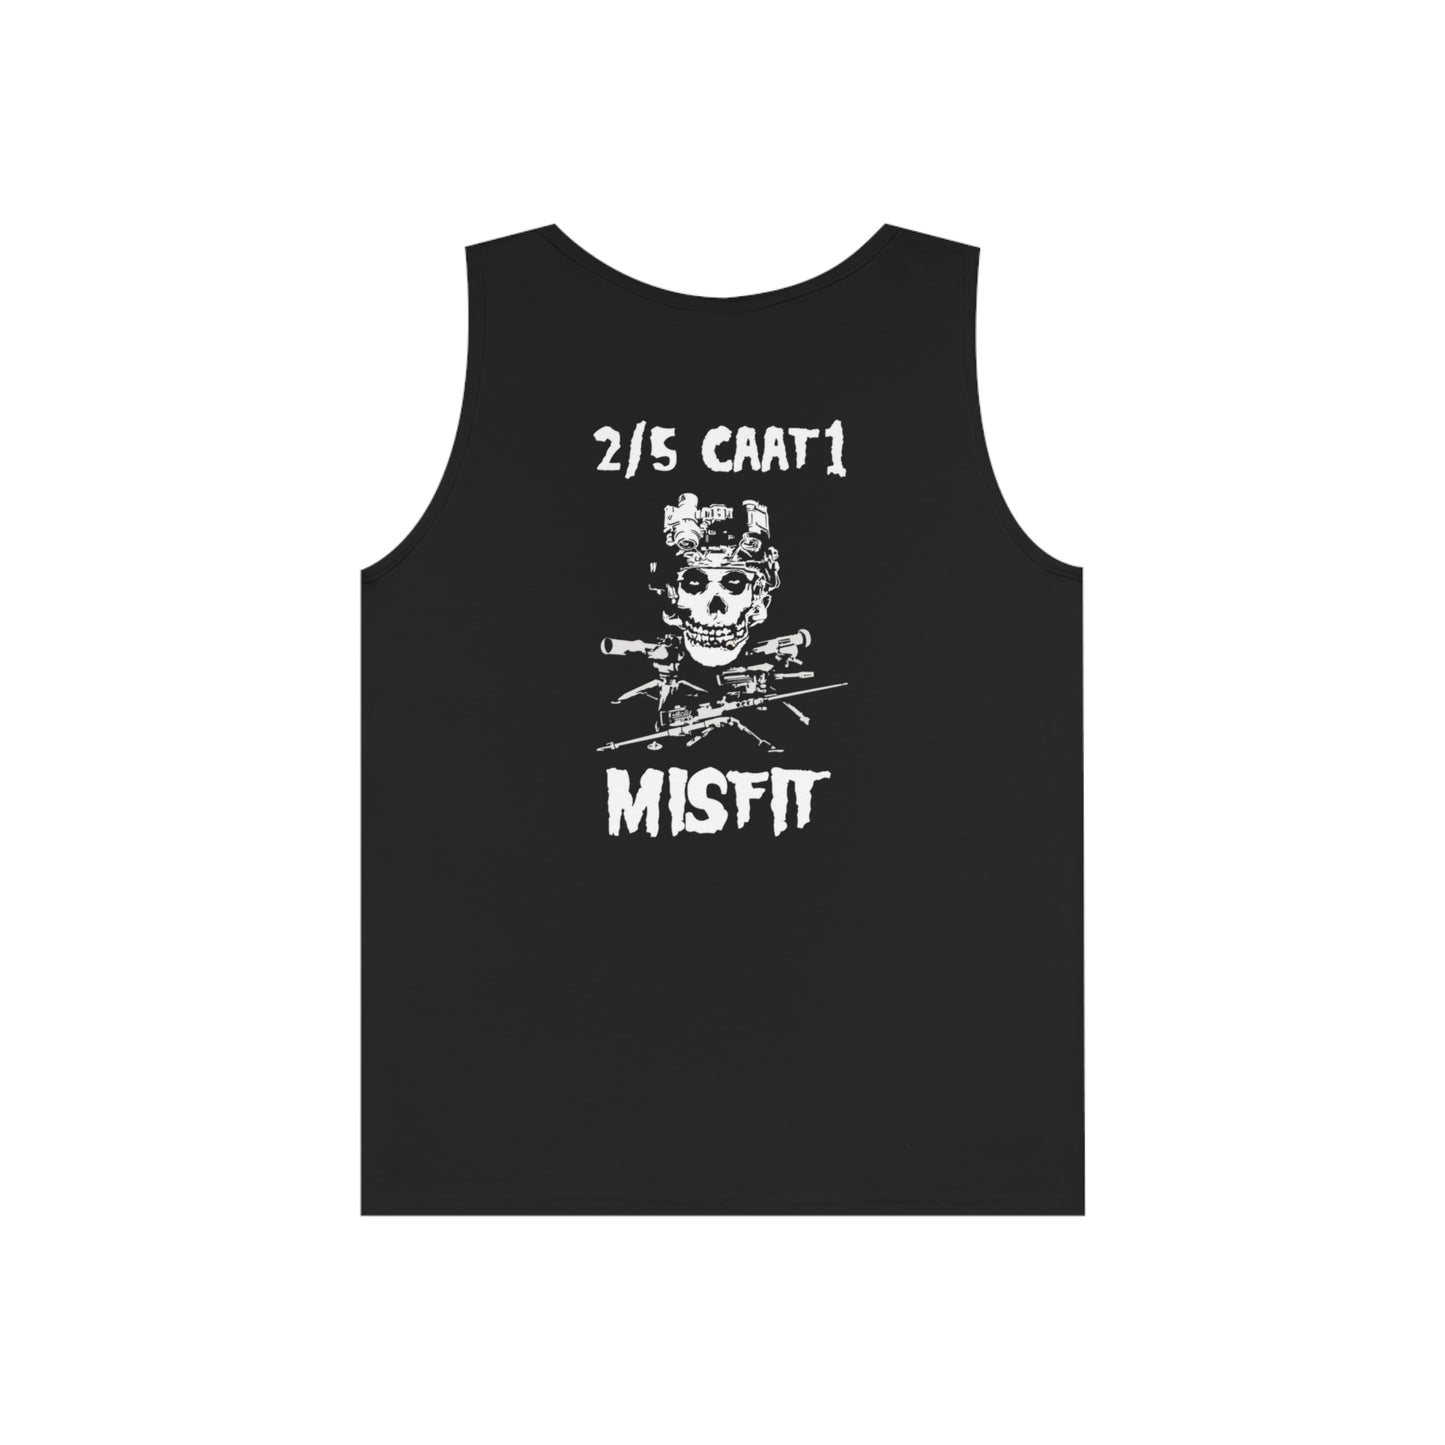 Misfit 2/5 Tank Top